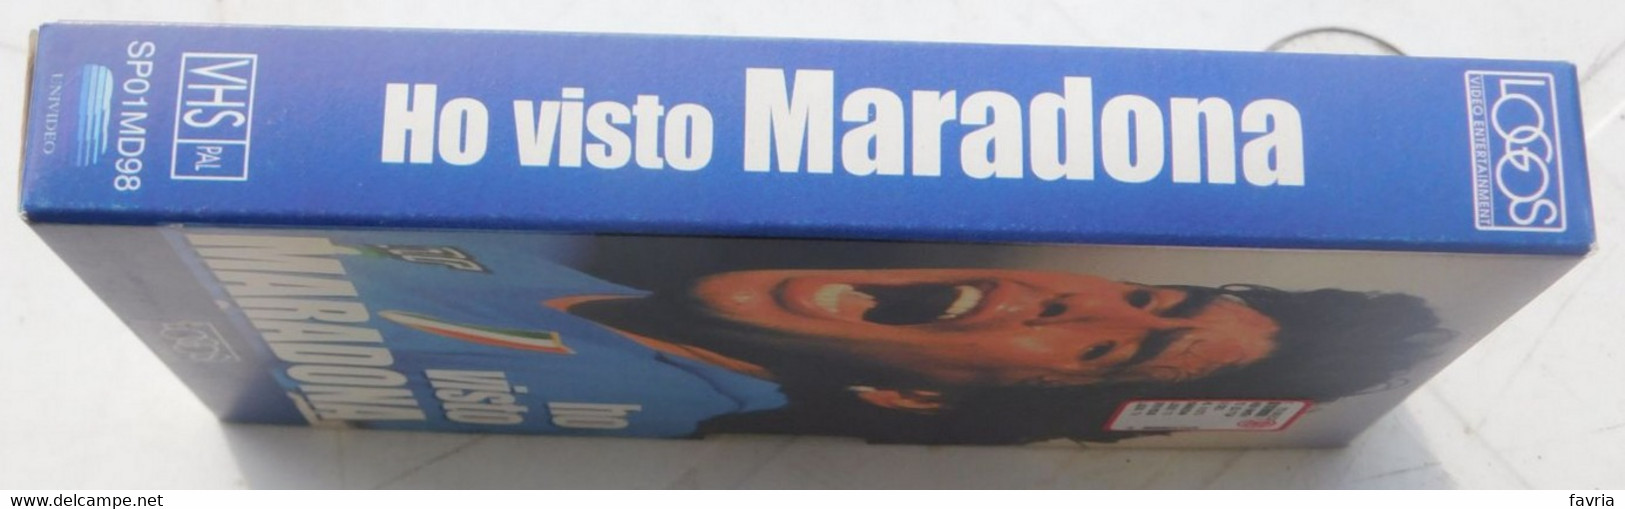 VHS - Ho Visto  MARADONA (Napoli) # Logos, 1998 # 65 Minuti - Immagini Pubbliche E Private Inedite - Sport